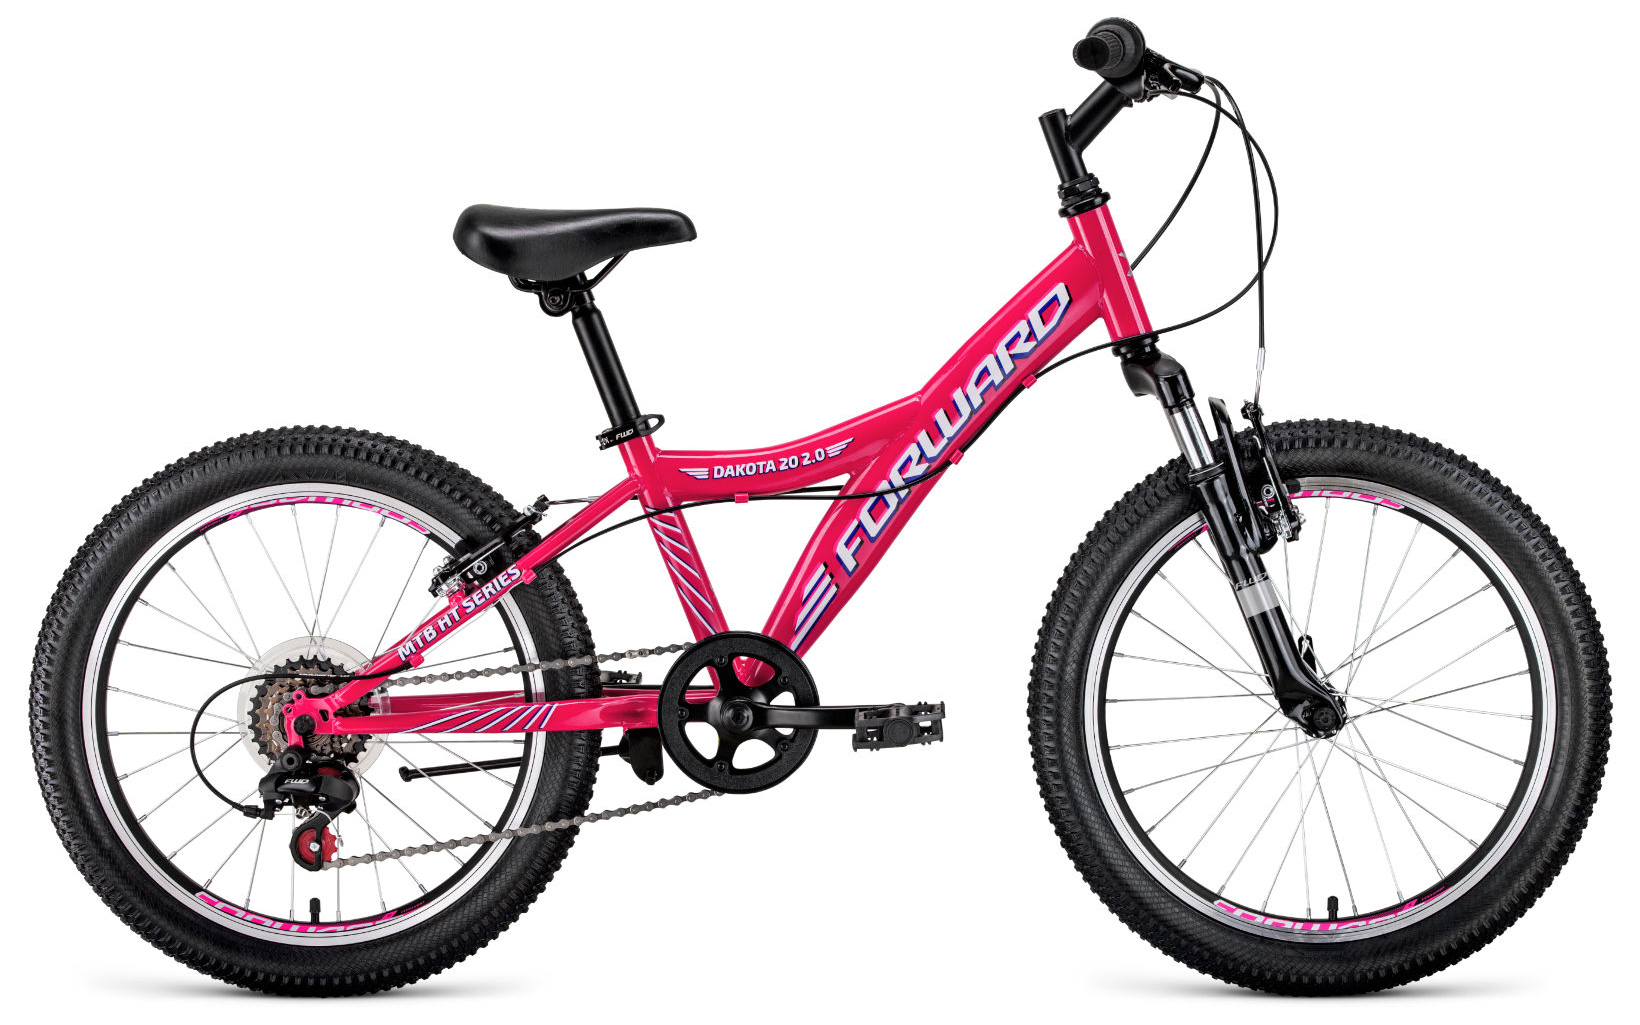  Отзывы о Детском велосипеде Forward Dakota 20 2.0 2020